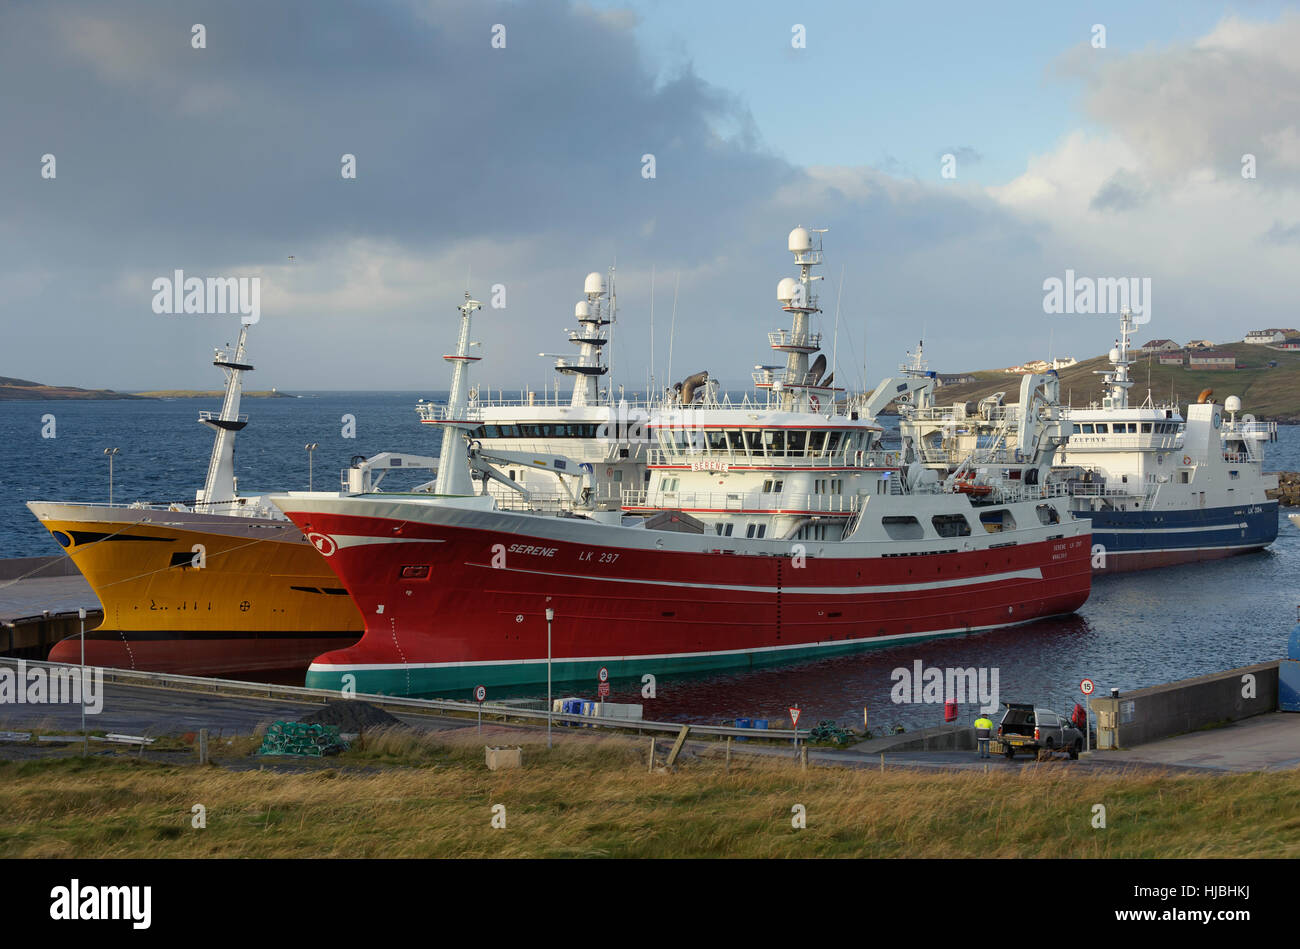 Les chalutiers pélagiques (G à D) le charisme, serein, et Zephyr au port à Symbister, île de Whalsay, Shetland. Octobre 2012. Banque D'Images